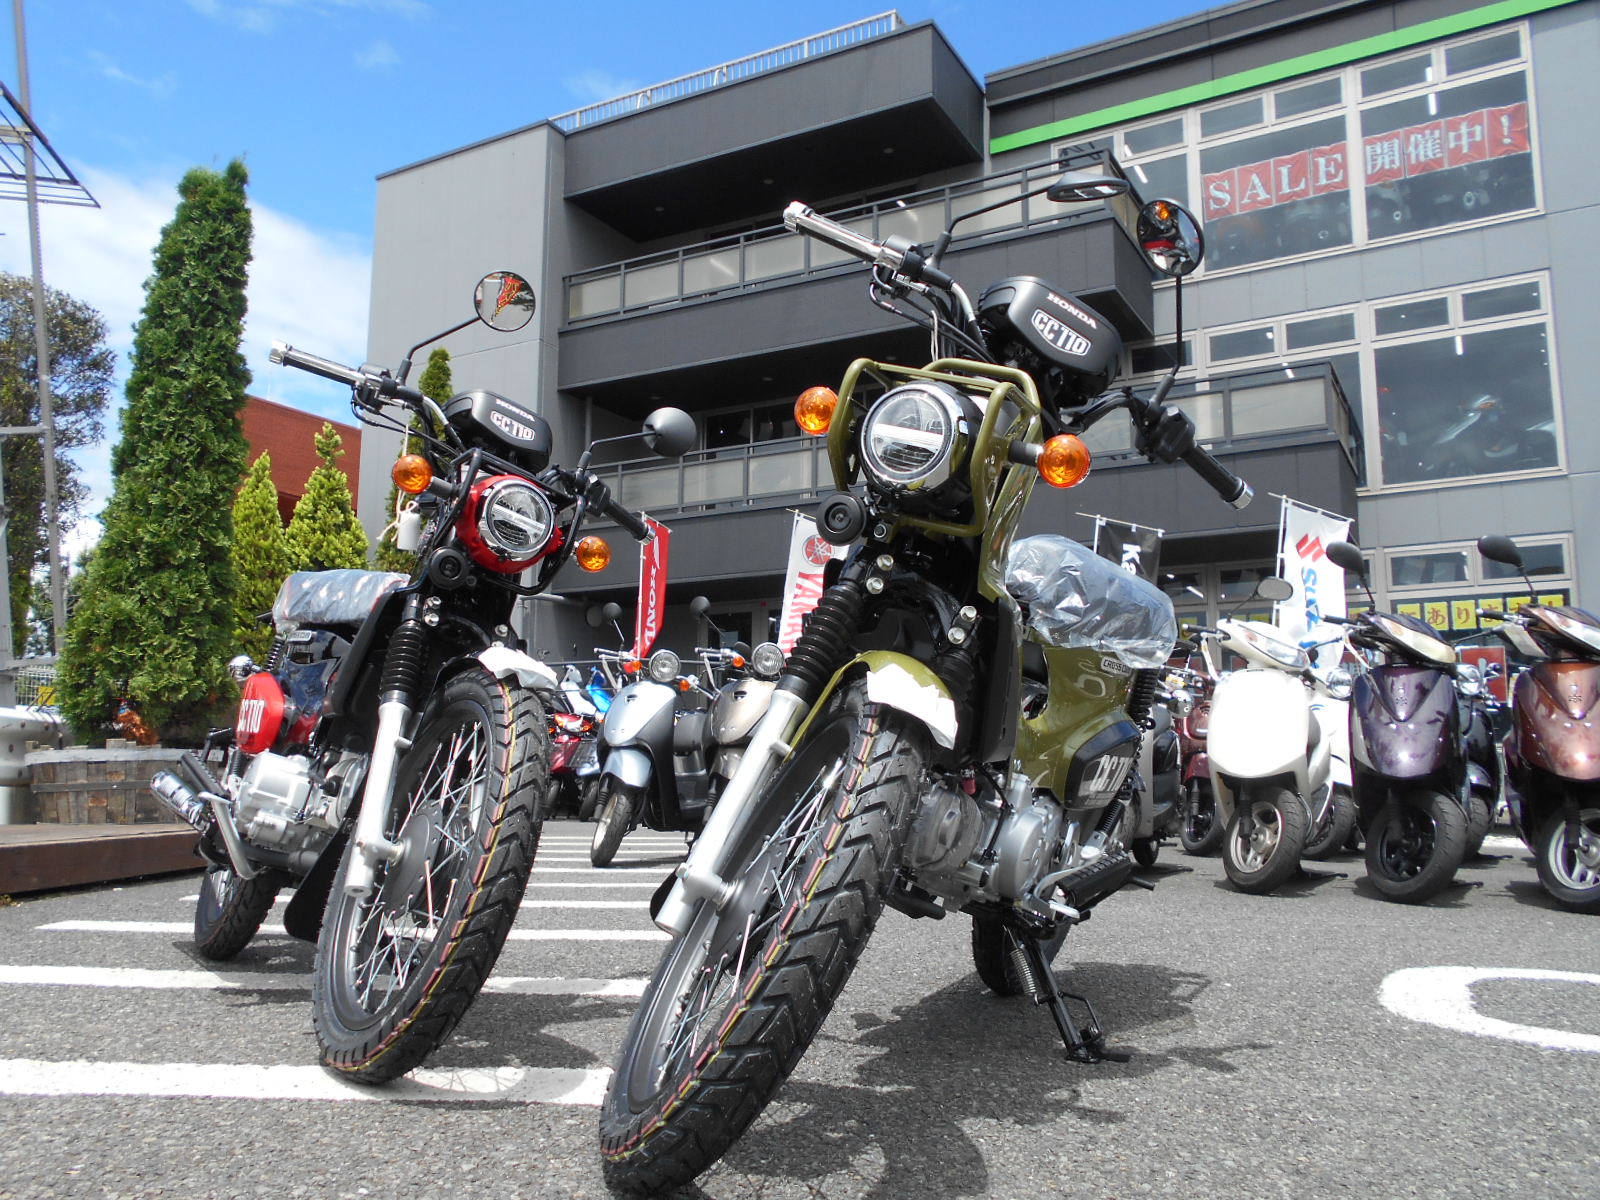 クロスカブ110即納できますよ くまモンも 最新情報 U Media ユーメディア 中古 バイク 新車バイク探しの決定版 神奈川 東京でバイク探すならユーメディア